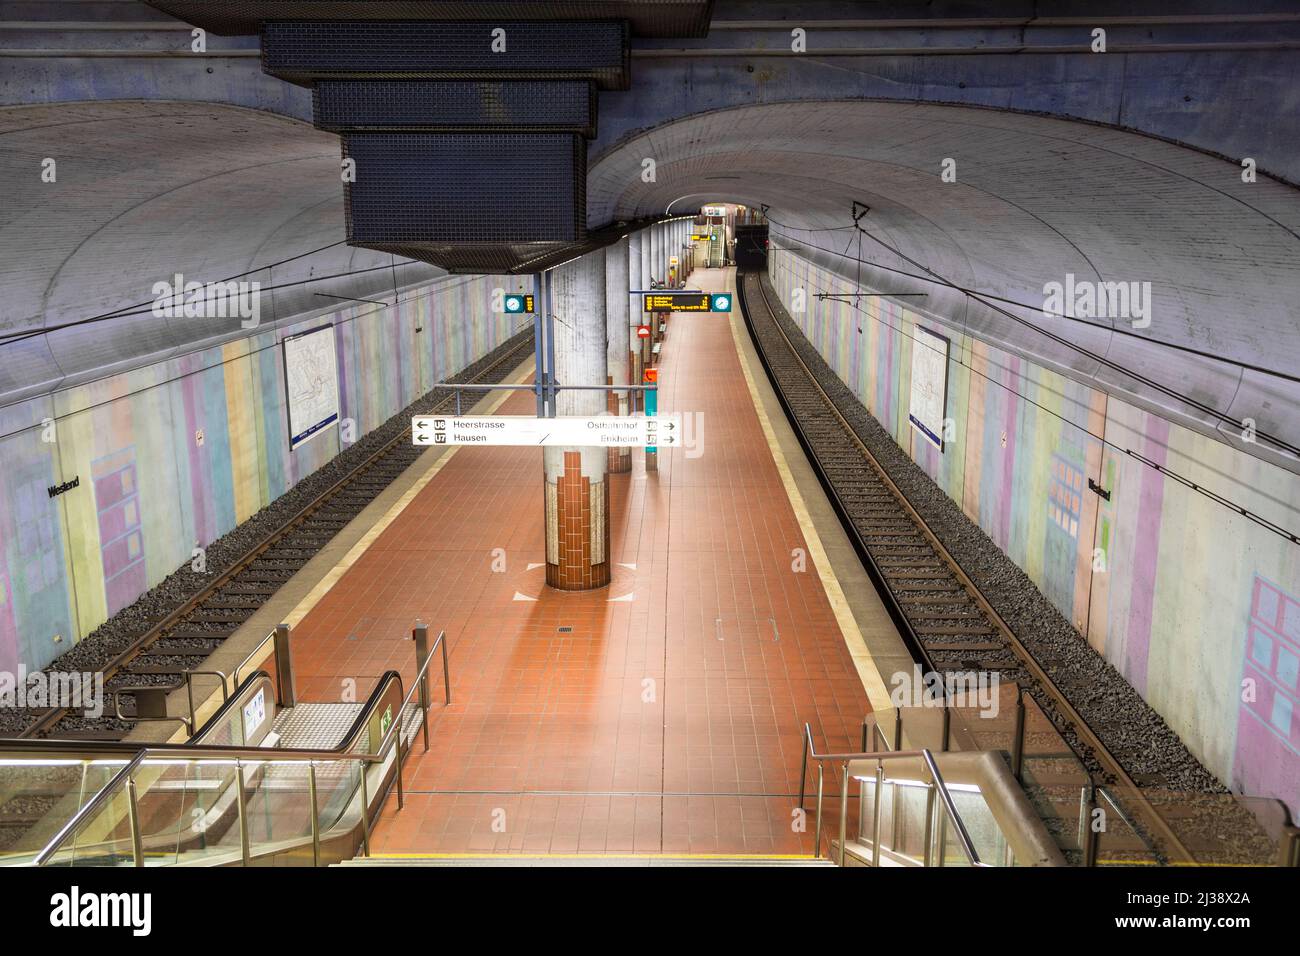 FRANCOFORTE, GERMANIA - 19 GENNAIO 2014: Stazione della metropolitana Westend. Da questa stazione operano le linee U6 nad U7. Foto Stock